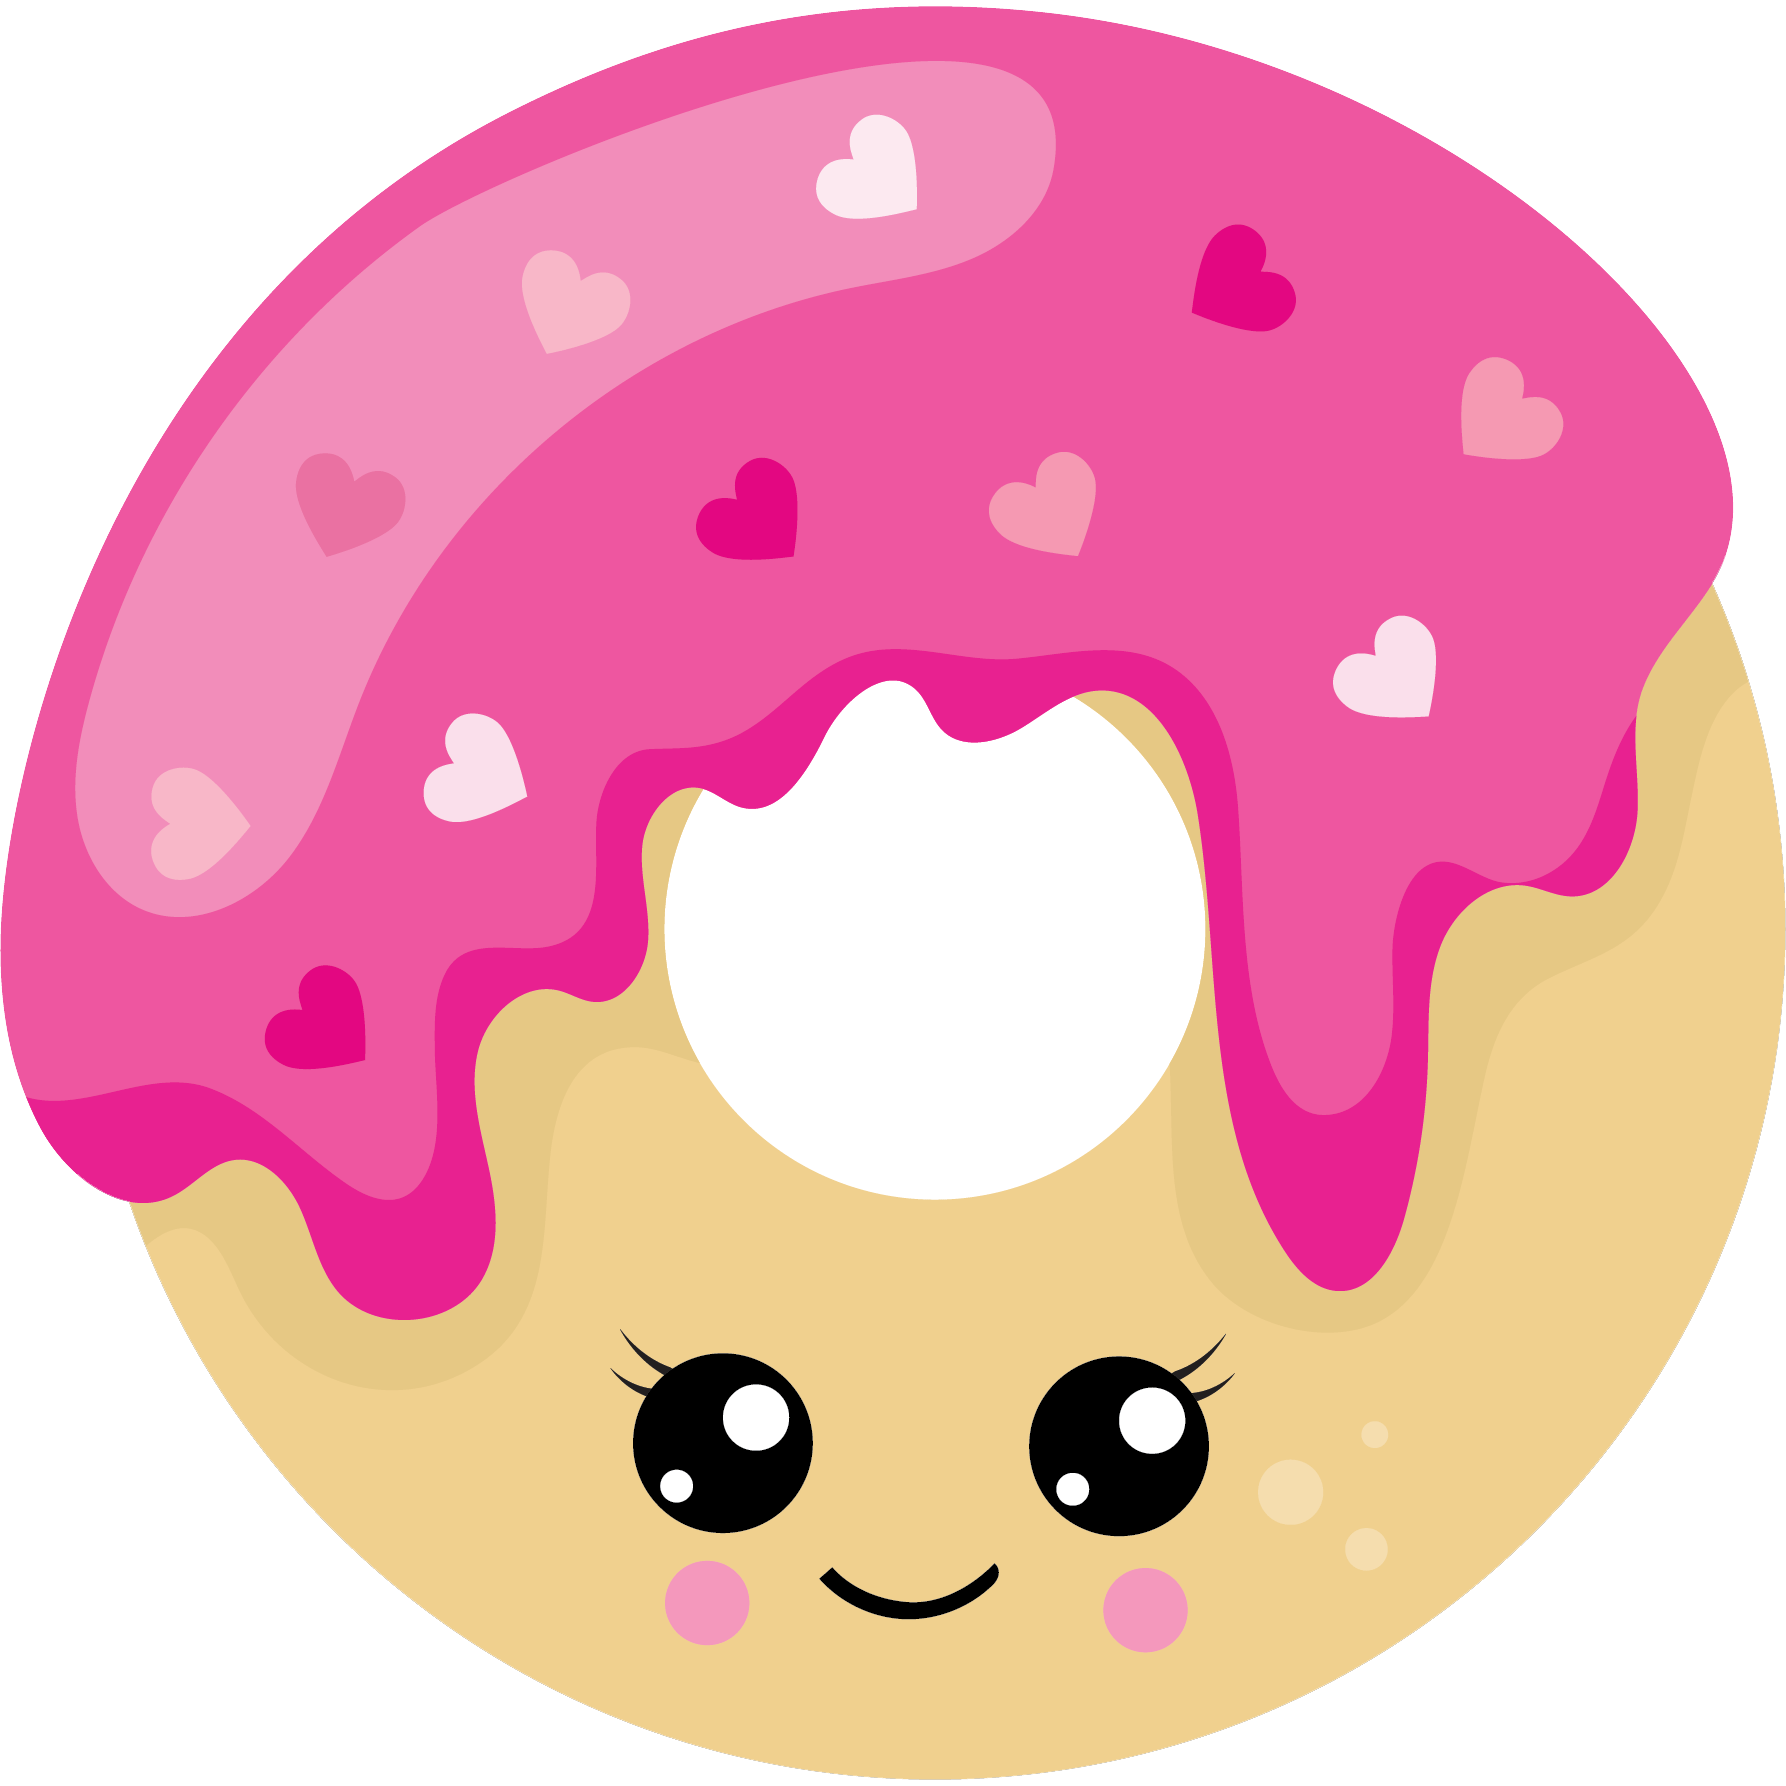 Contract clipart dealer. Pink heart doughnut kawaii